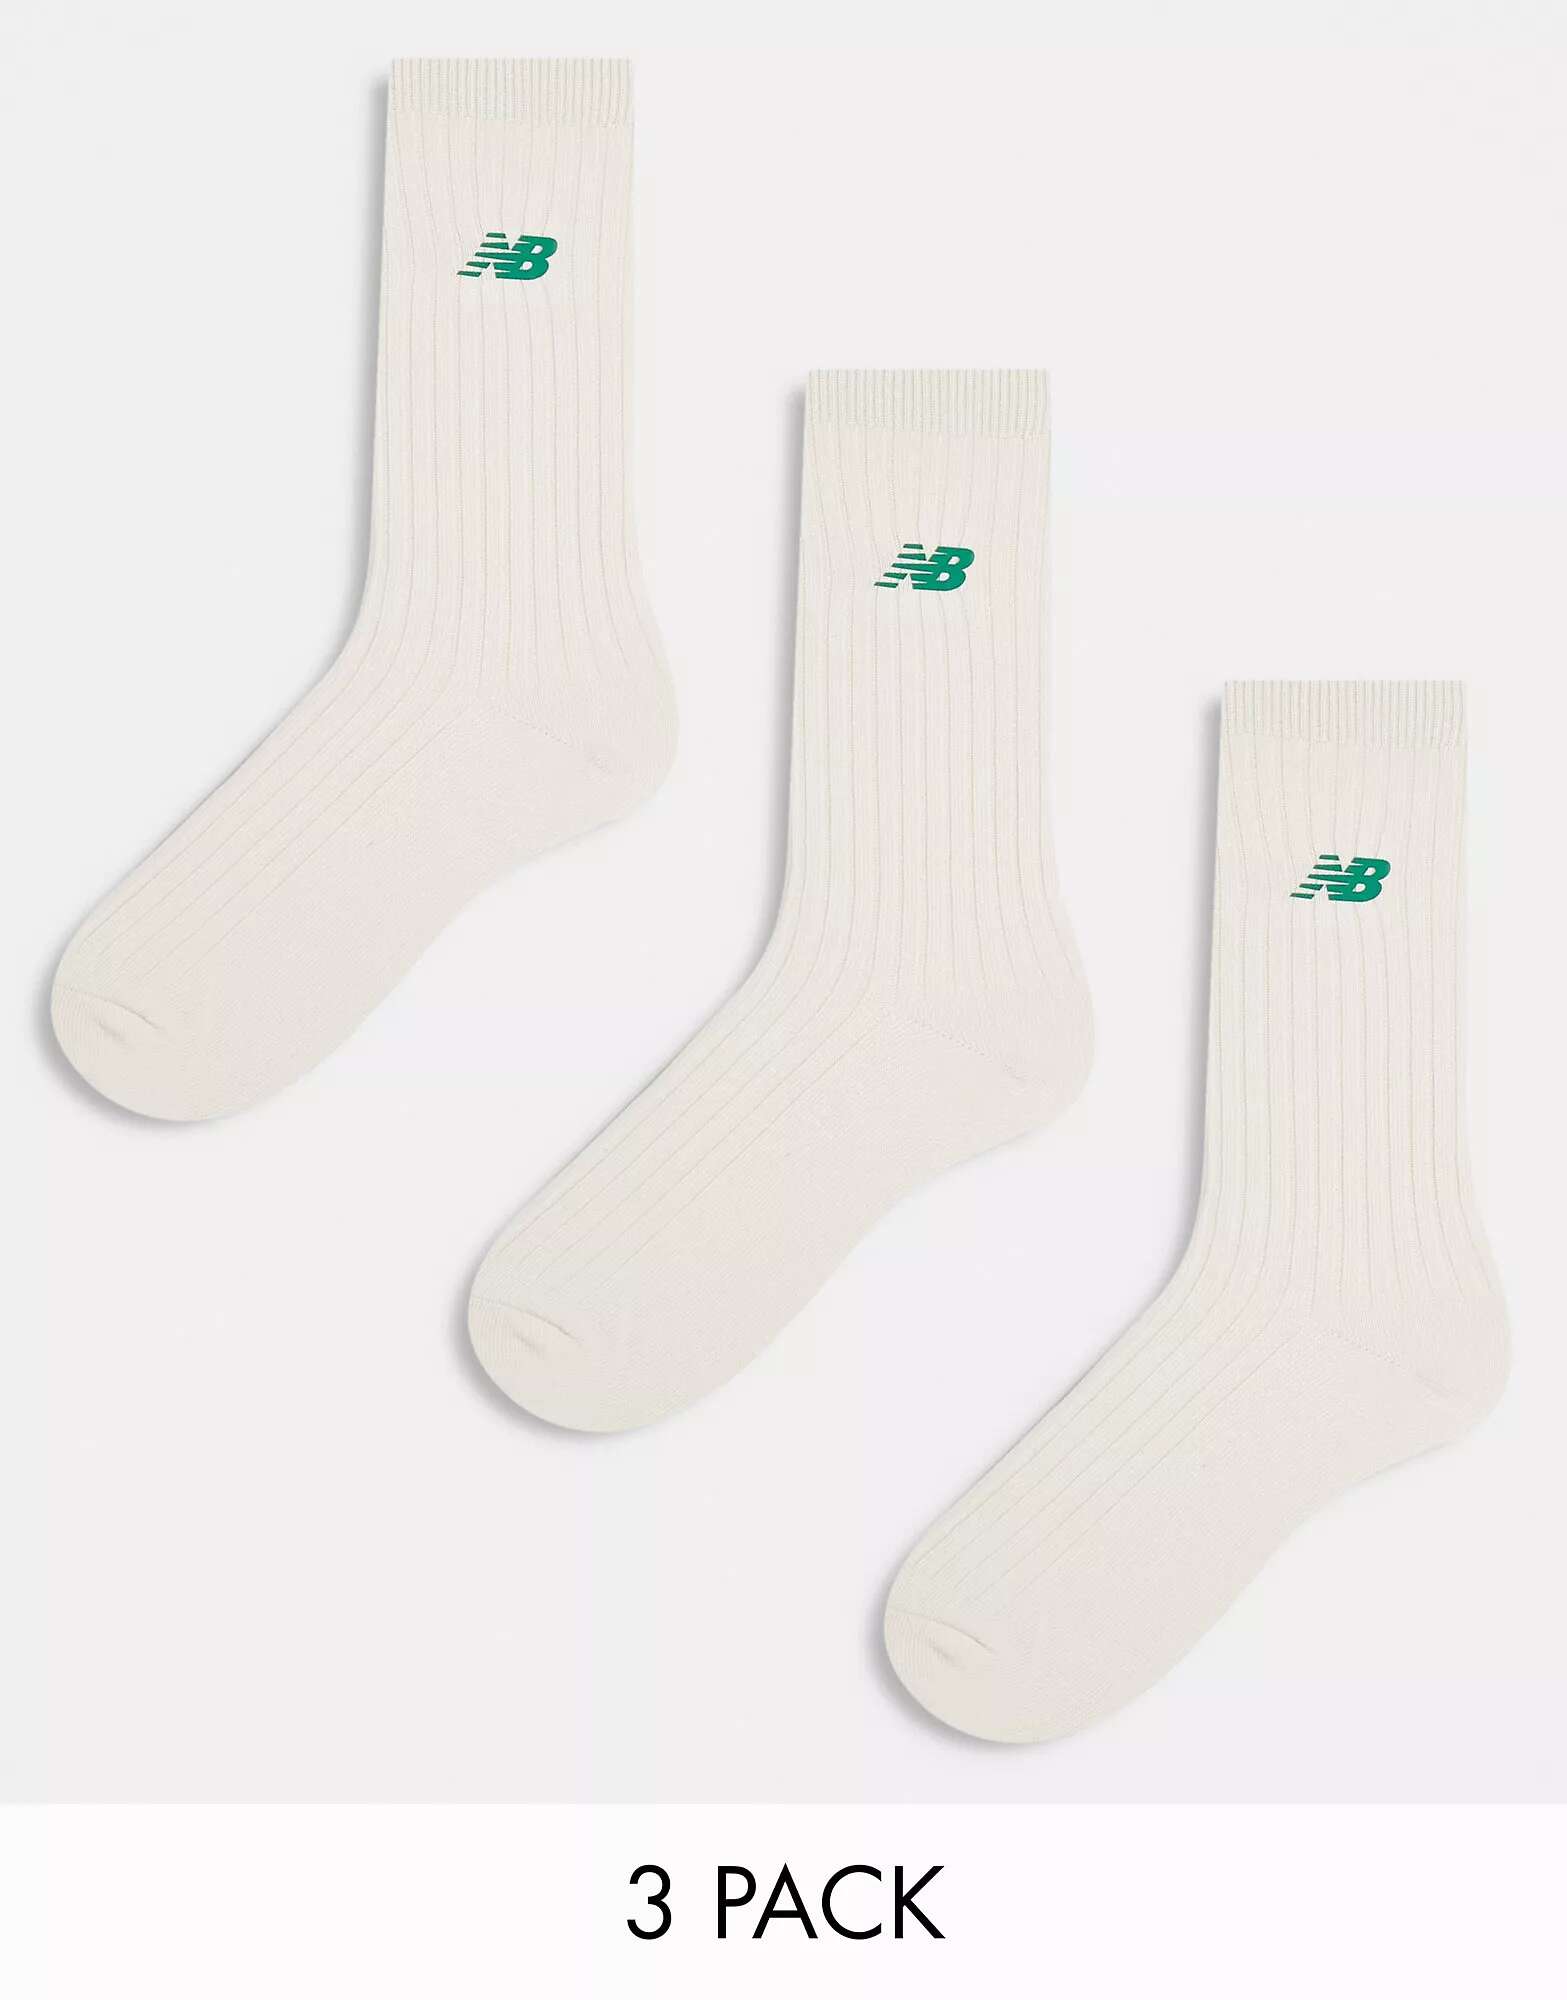 Три пары носков с логотипом New Balance кремового и зеленого цветов